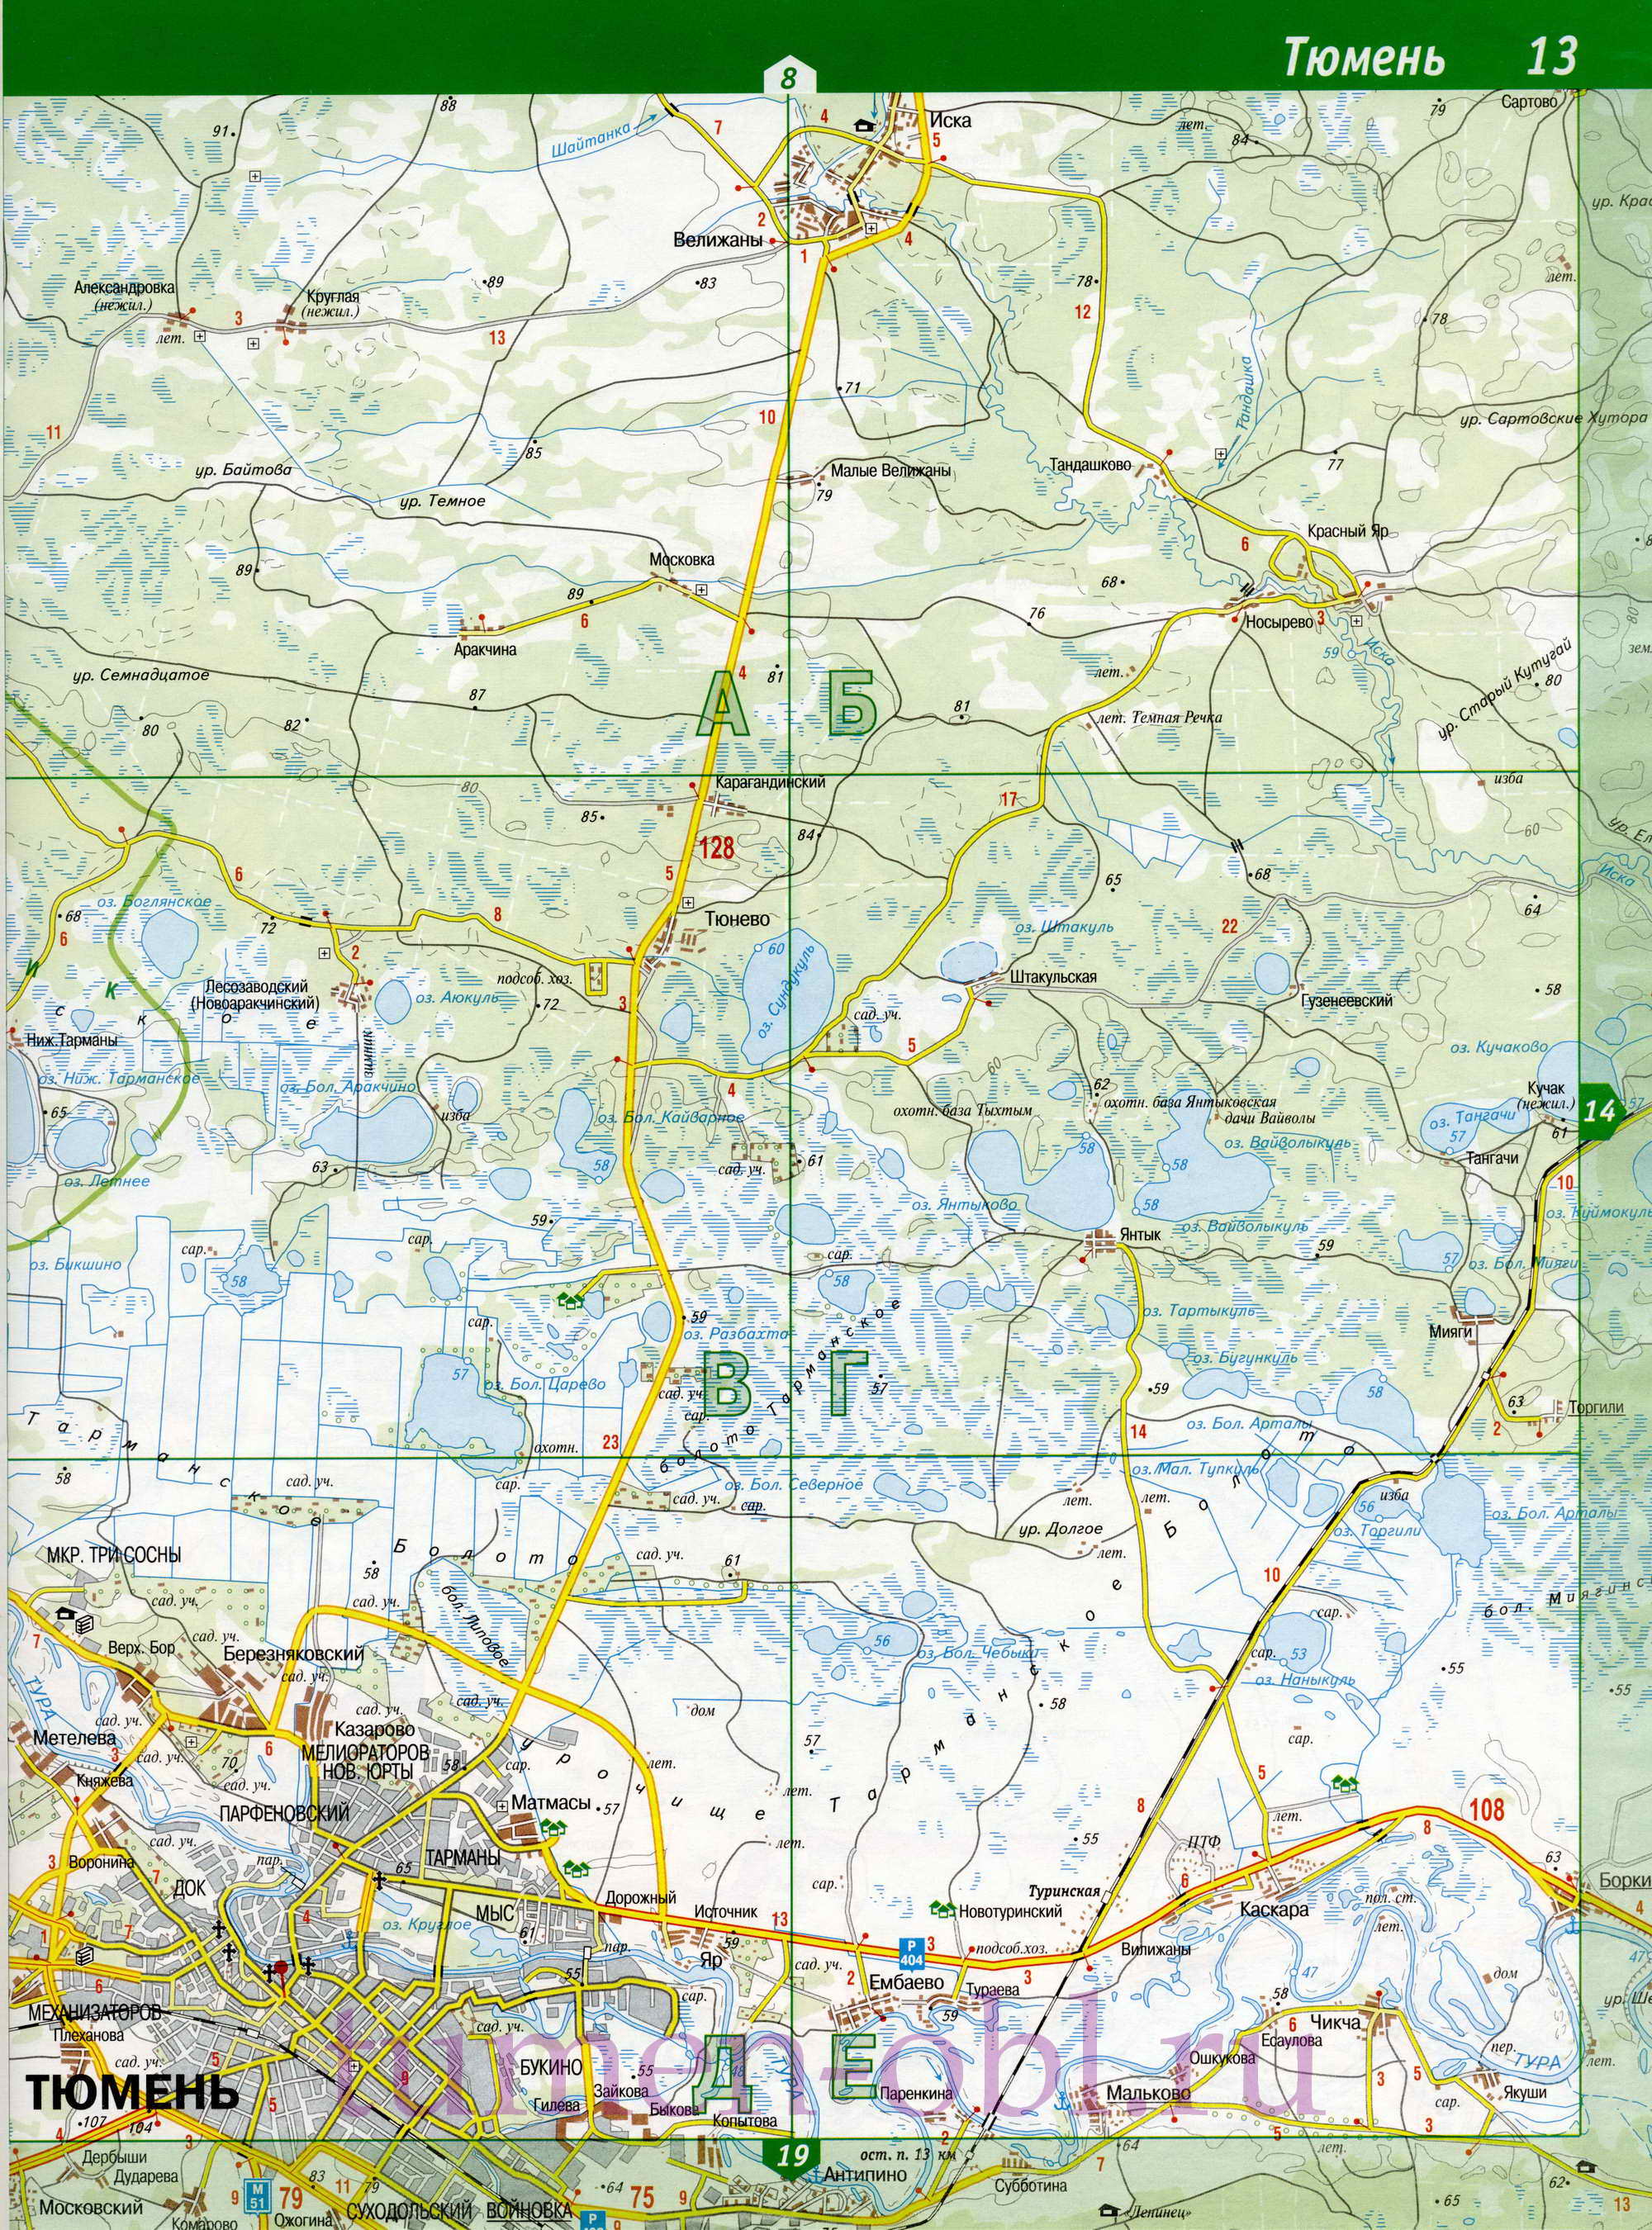 Карта Тюменской области топографическая. Подробная топографическая карта Тюменской области масштаба 1см:2км, B0 - 